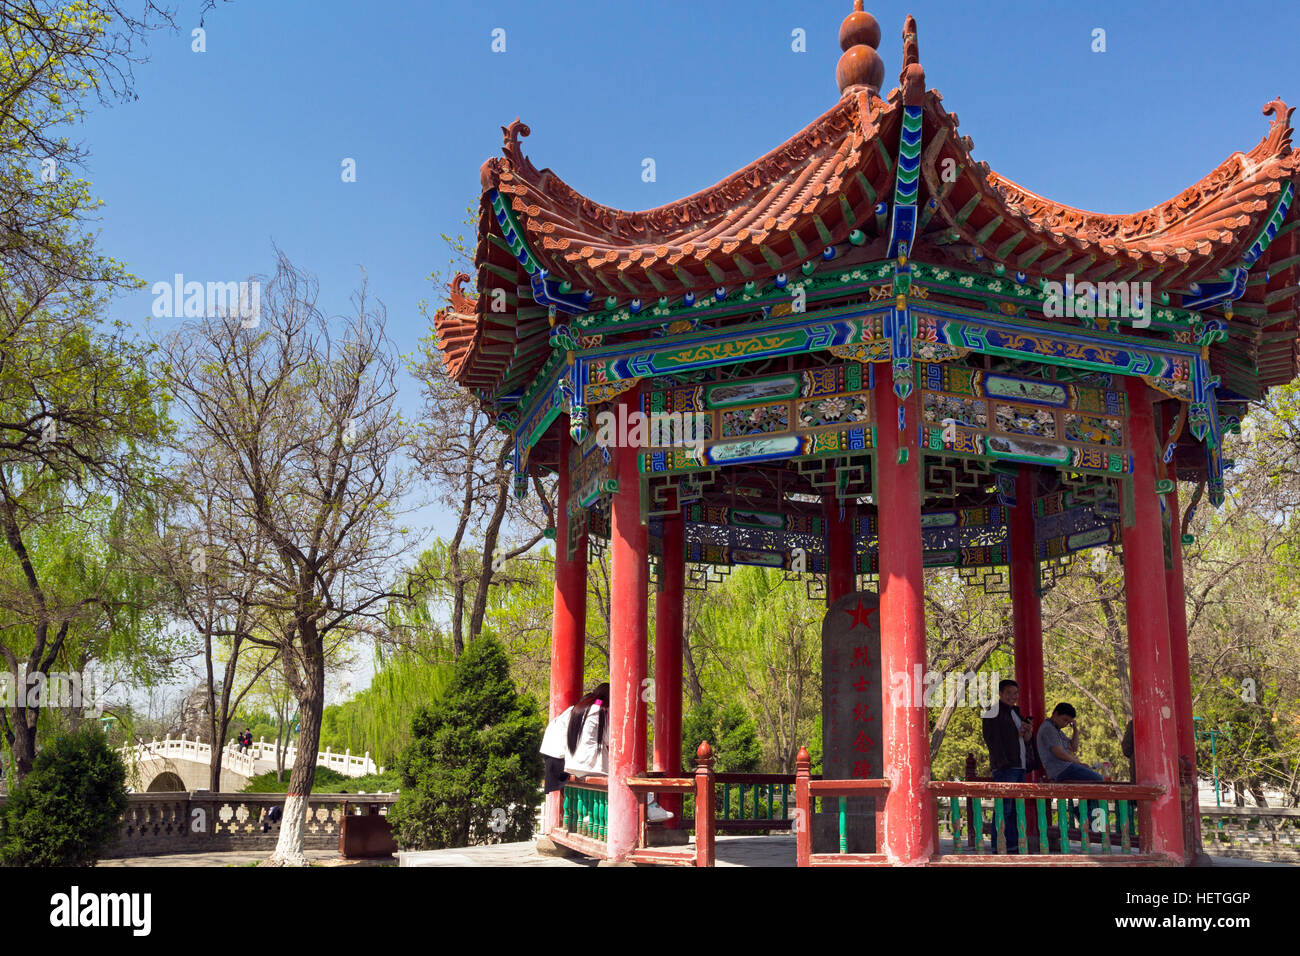 Chinese pavilion, Zhongshan Park, Yinchuan, Ningxia, China Stock Photo